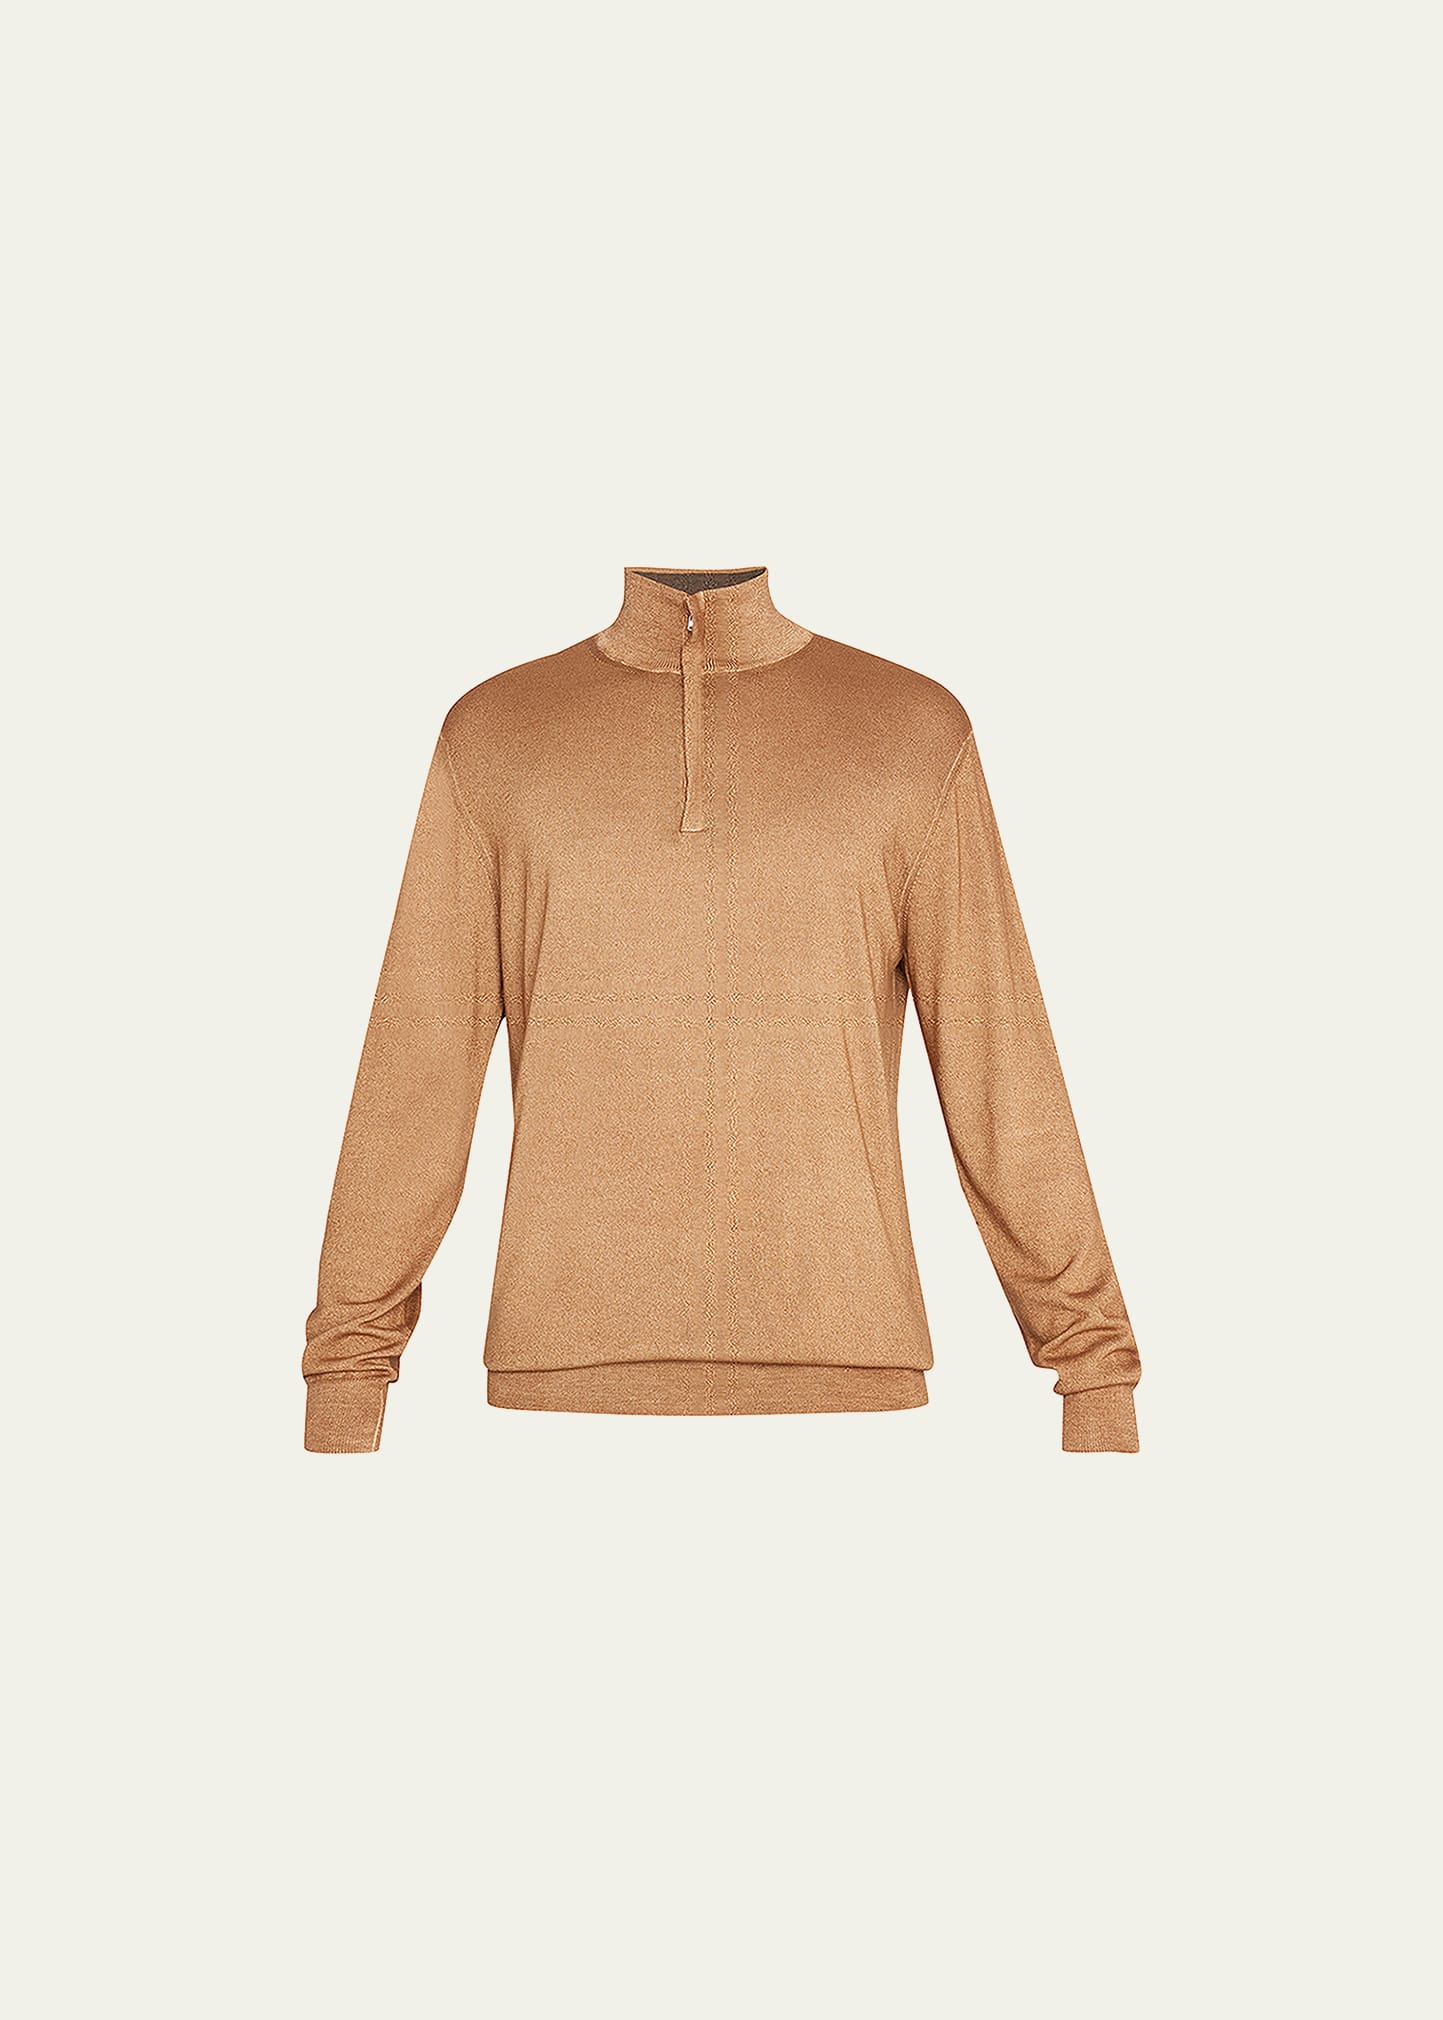 Fioroni Men's Cashmere Quarter-Zip Sweater